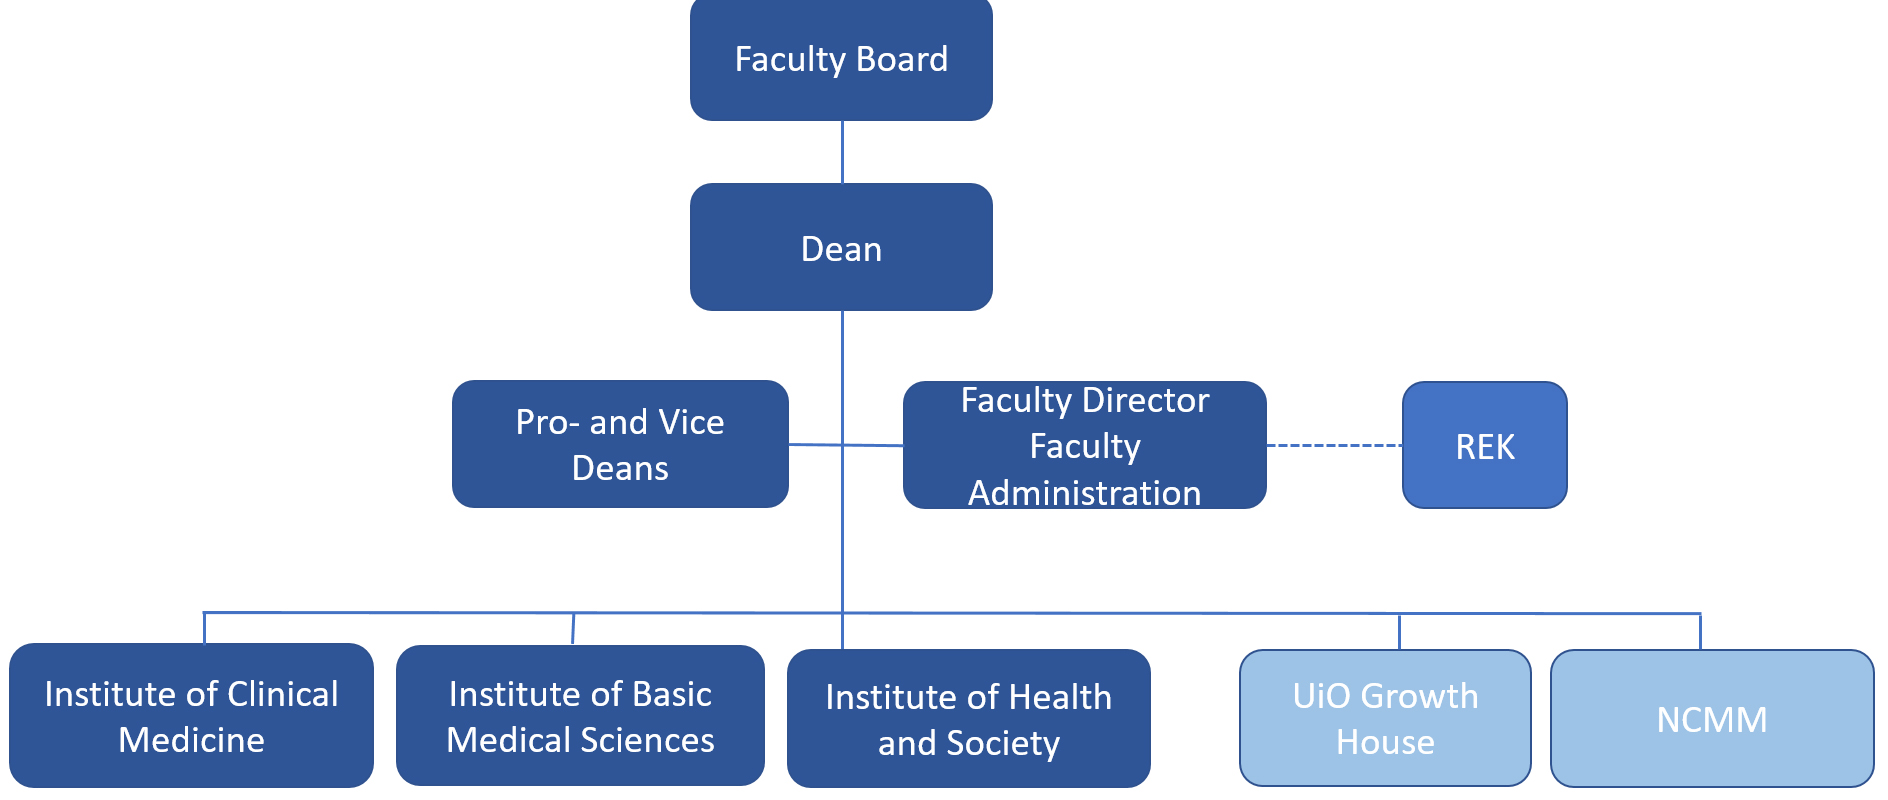 Organization chart 